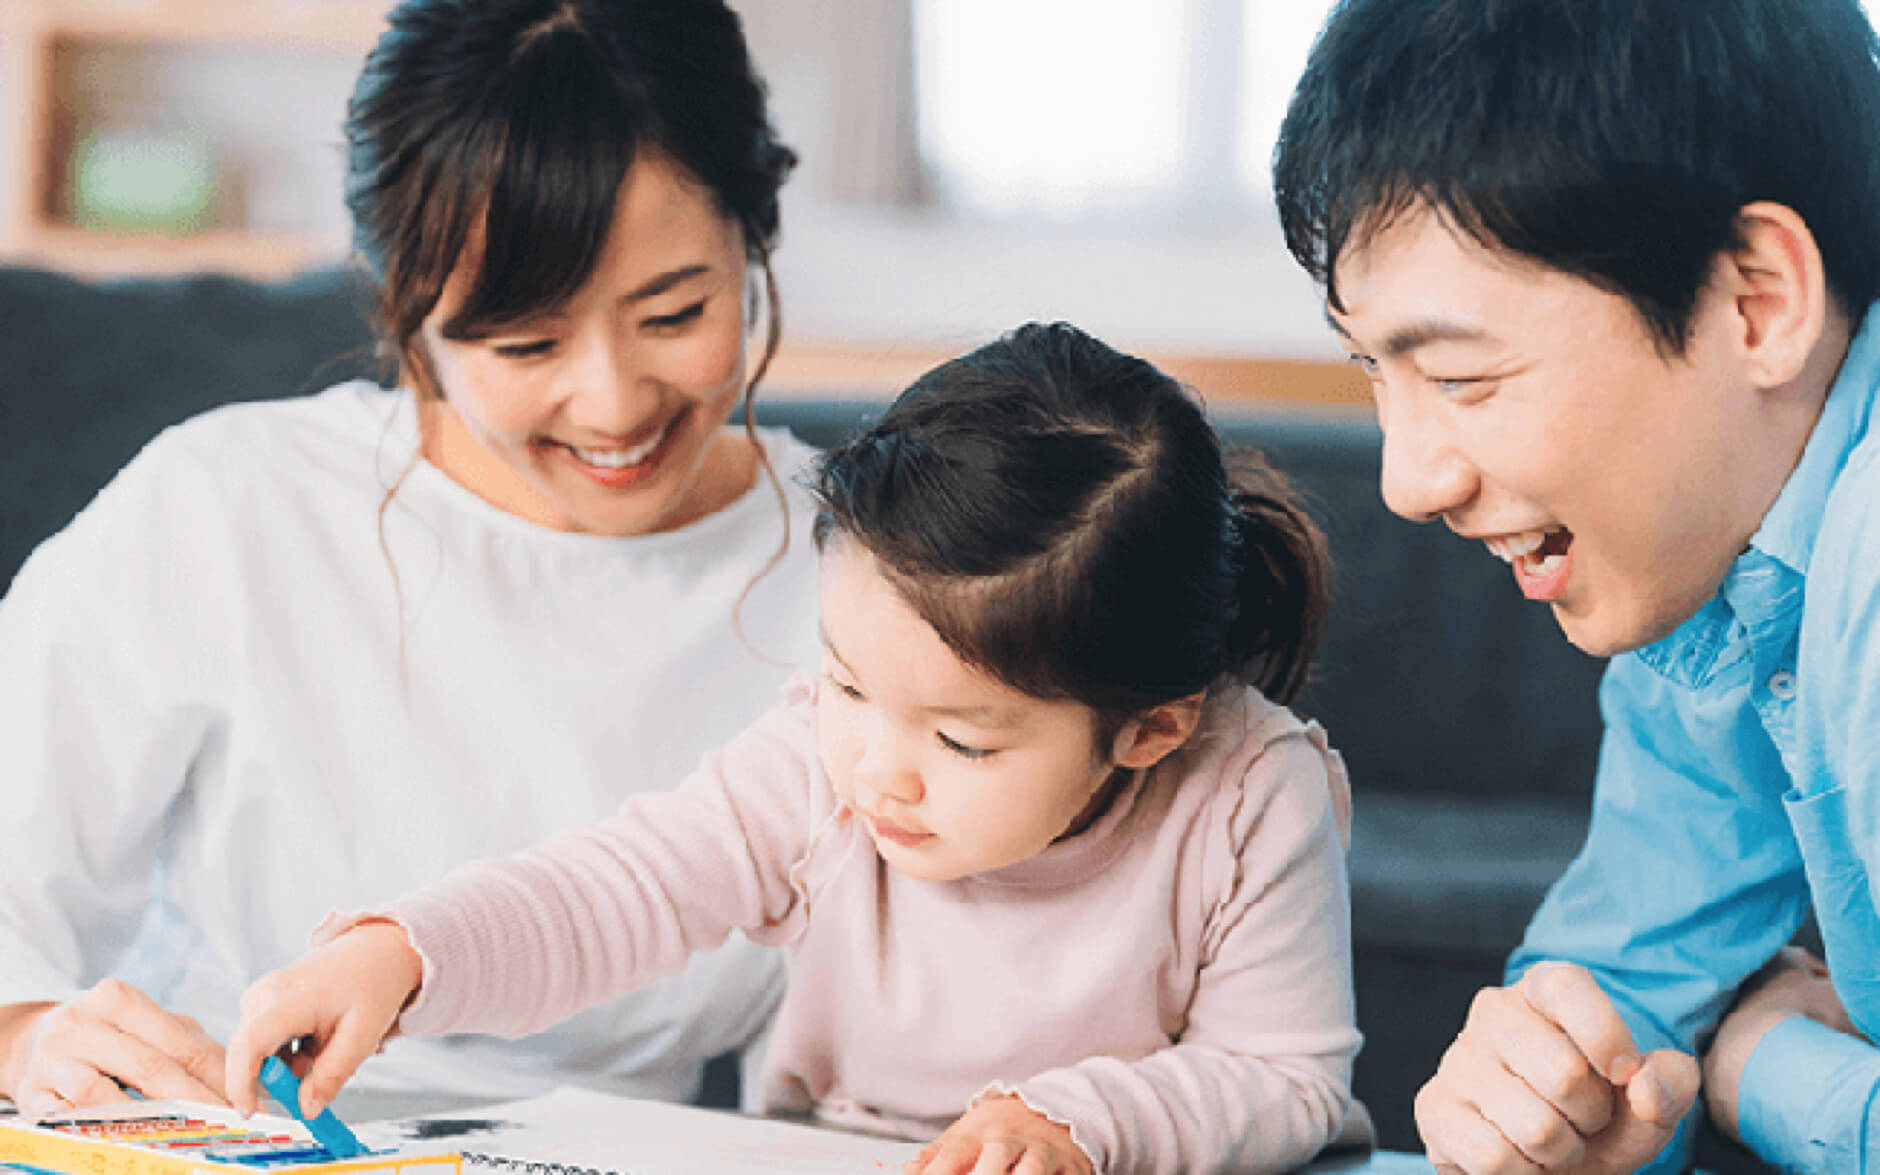 5 nguyên tắc vàng dạy con theo phương pháp giáo dục Montessori tại nhà: Muốn con tự lập, ba mẹ nên ghi nhớ những bí quyết này - Ảnh 1.